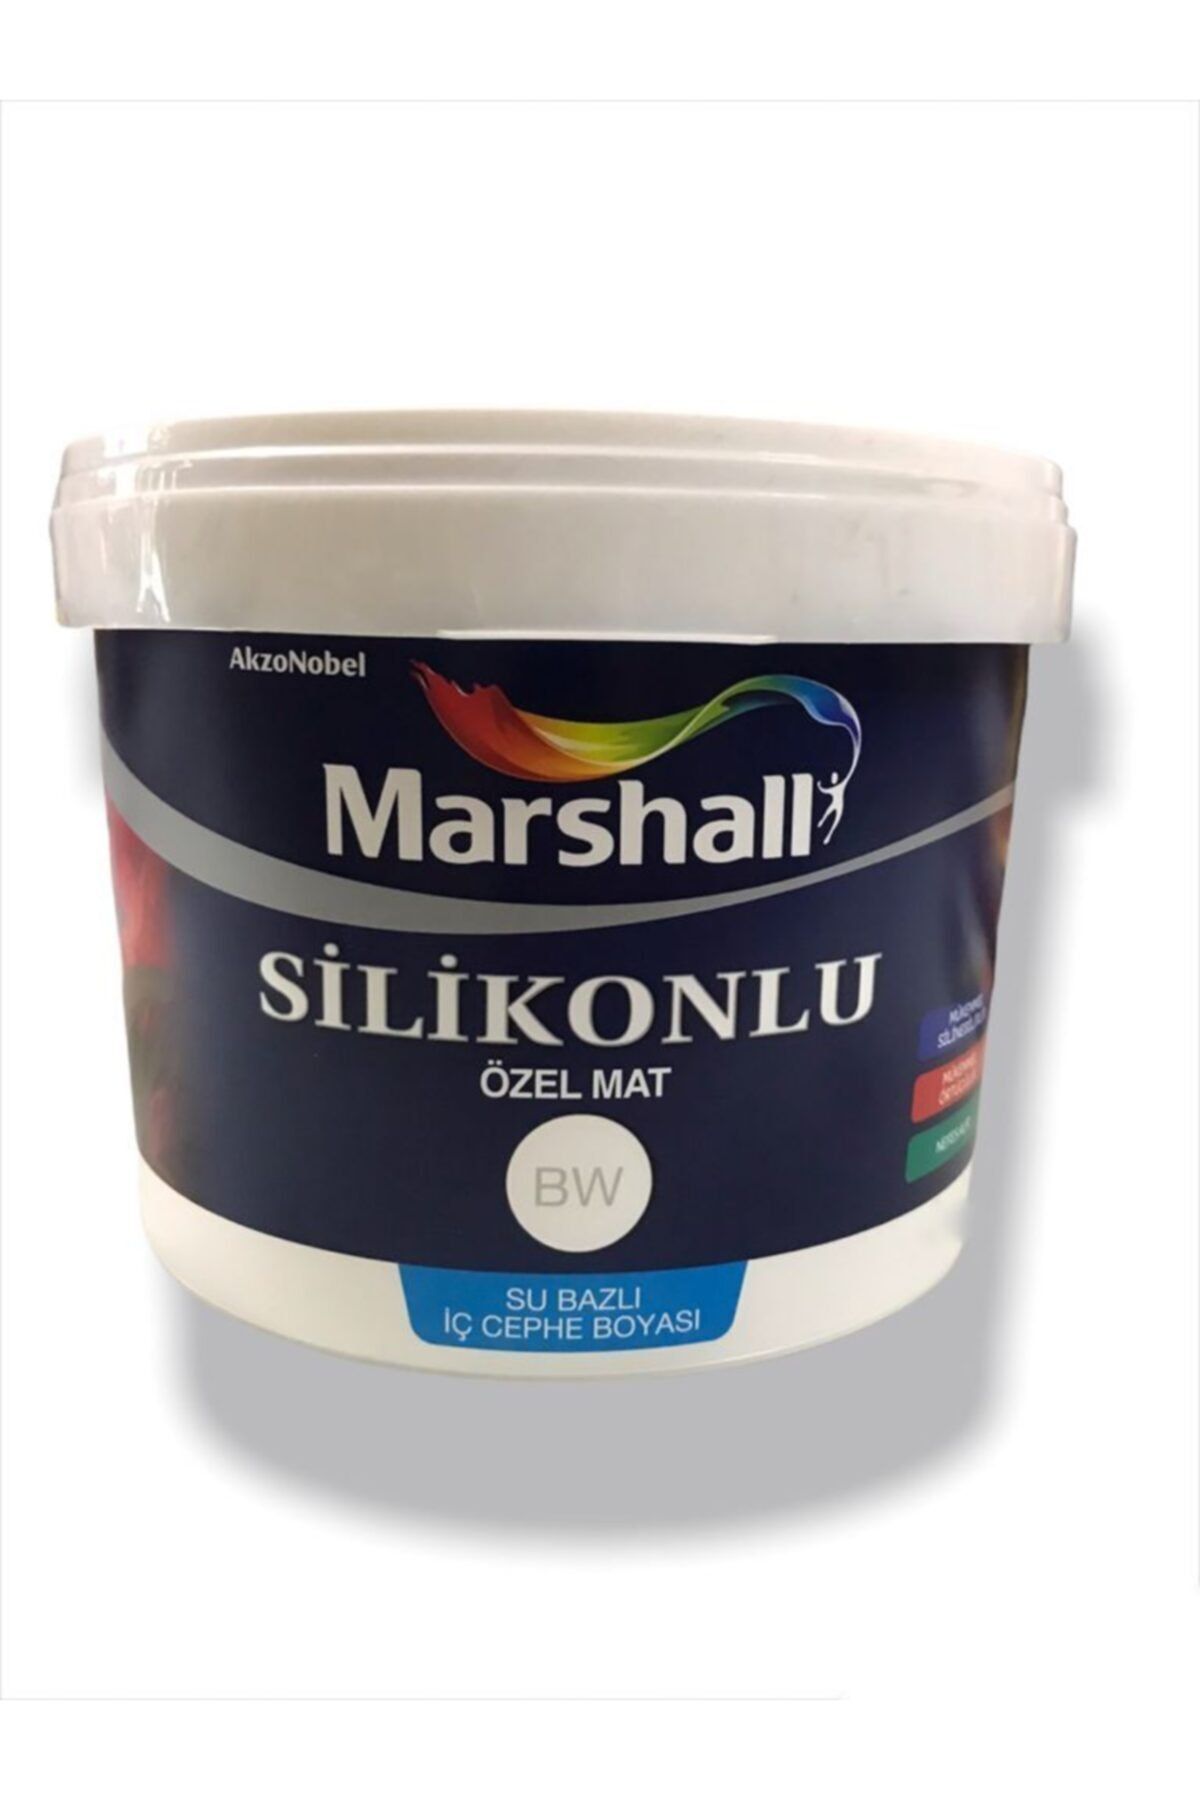 Marshall Silikonlu Özel Mat Tam Silinebilir Iç Cephe Duvar Boyası 15 Lt. (20 KG) - Leylak Çiçeği Rengi